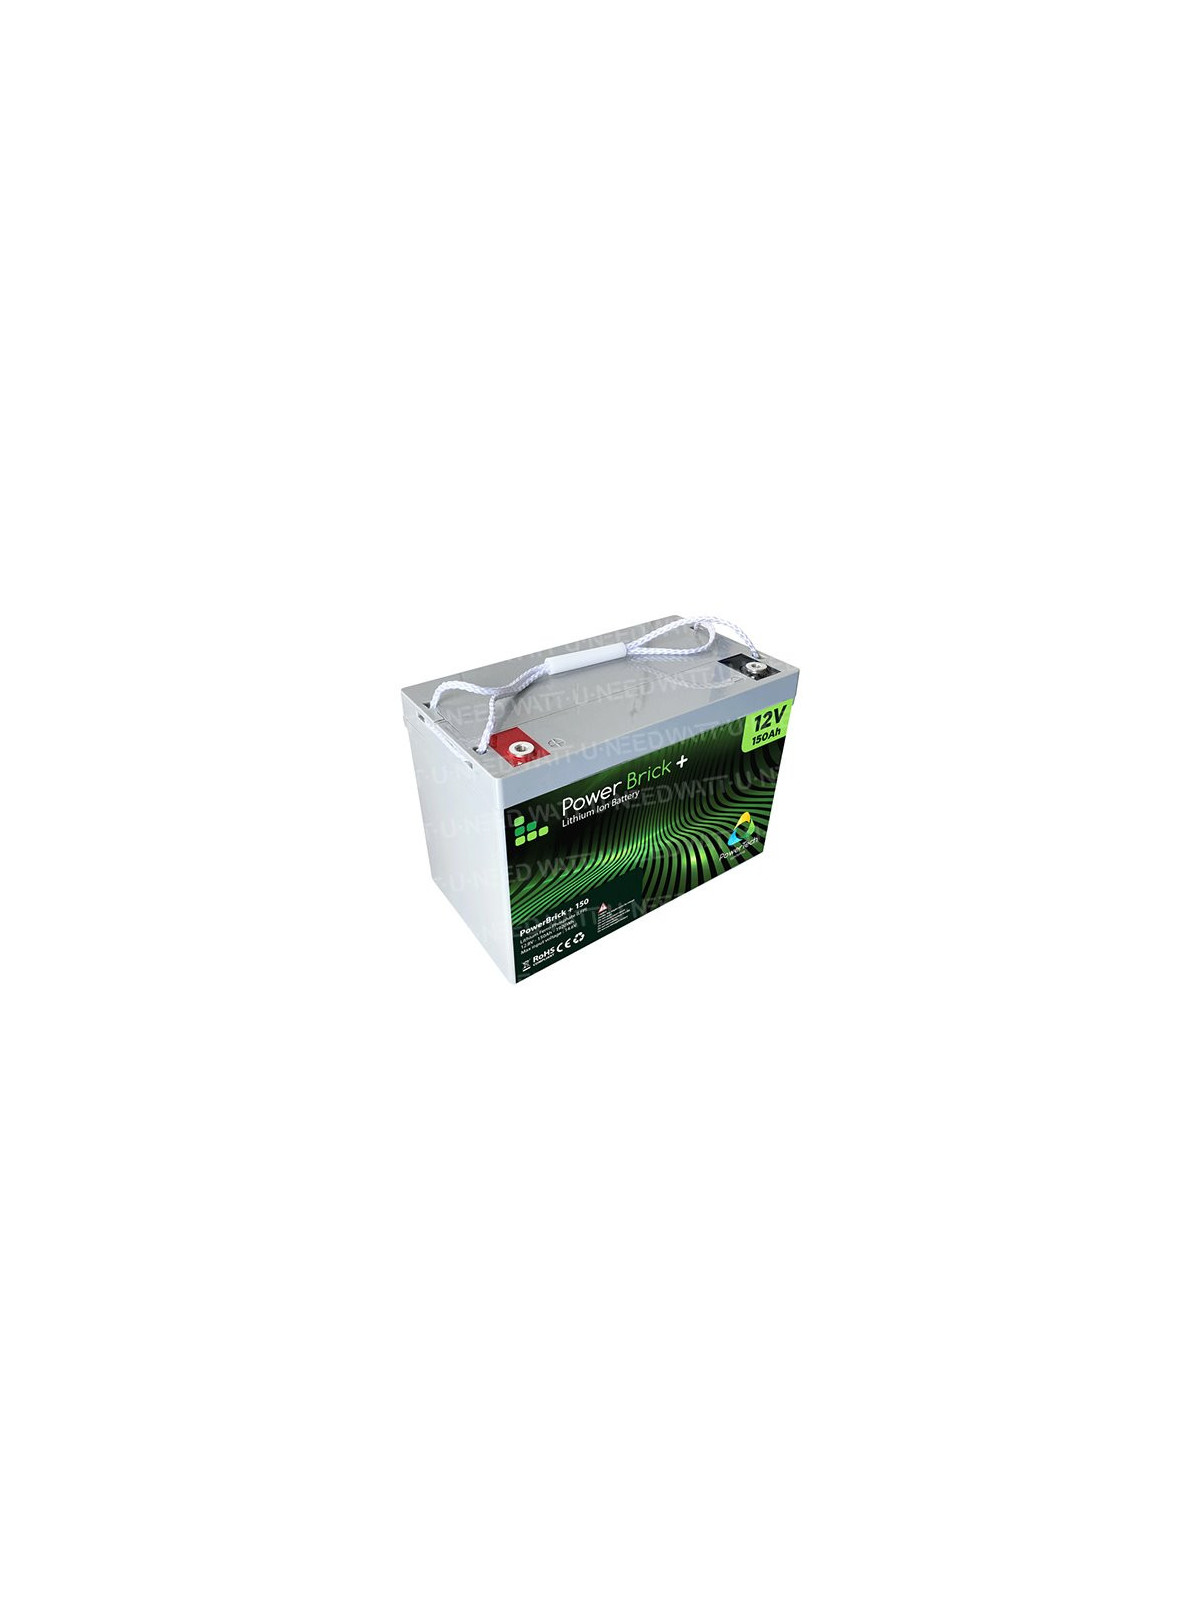 Batería de litio PowerBrick + 12V 100Ah